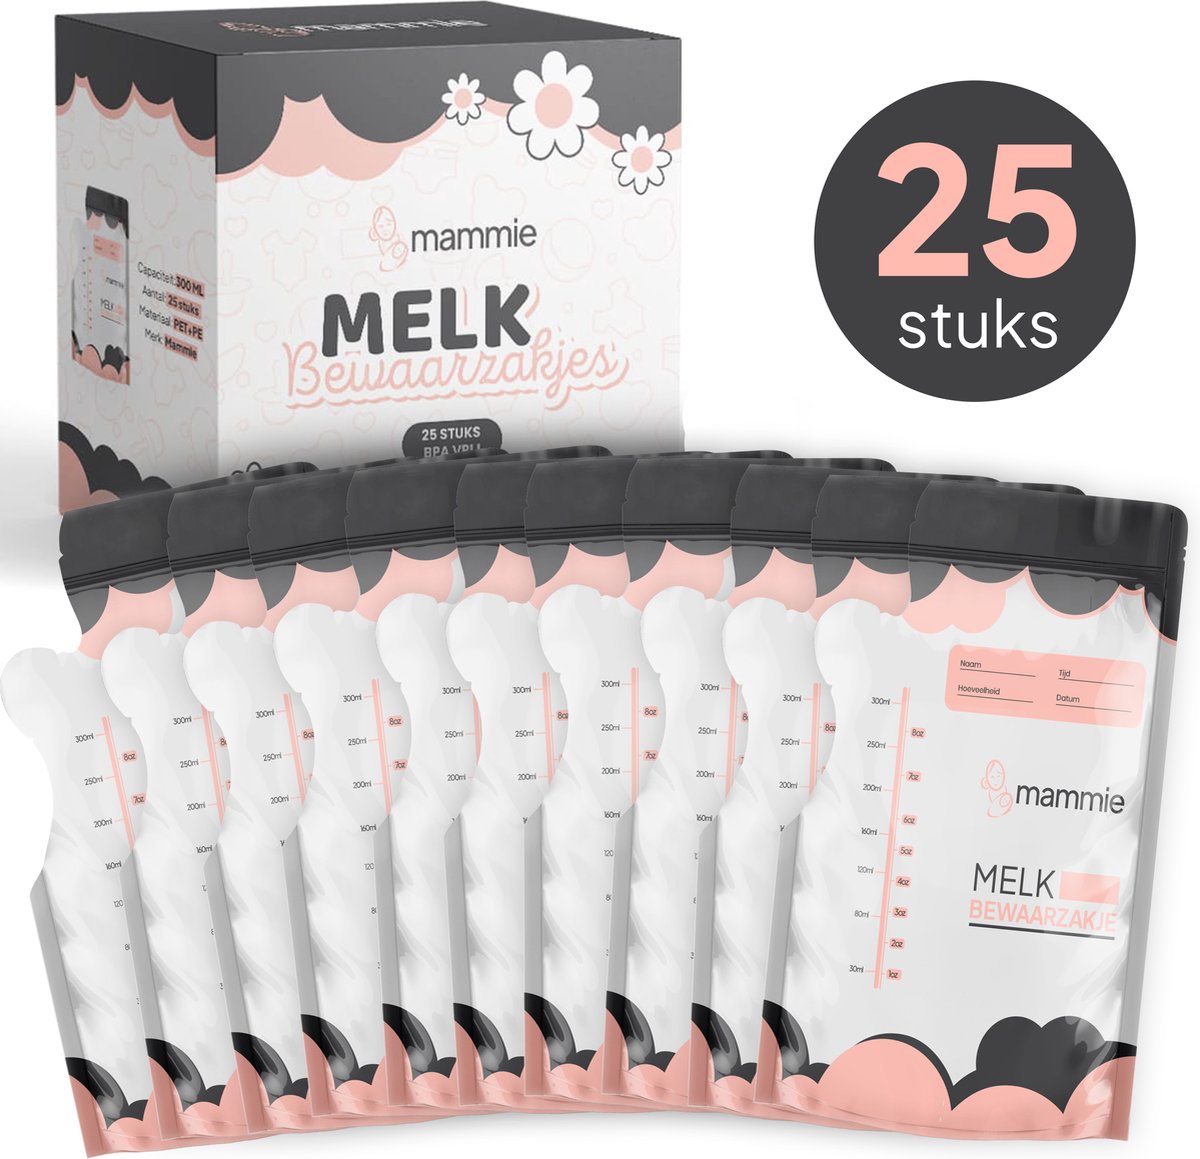 Mammie Moedermelk Bewaarzakjes met Schenktuit - Extra Groot - 300 ML - 25 stuks - Borstvoeding Bewaarzakje - BPA vrij